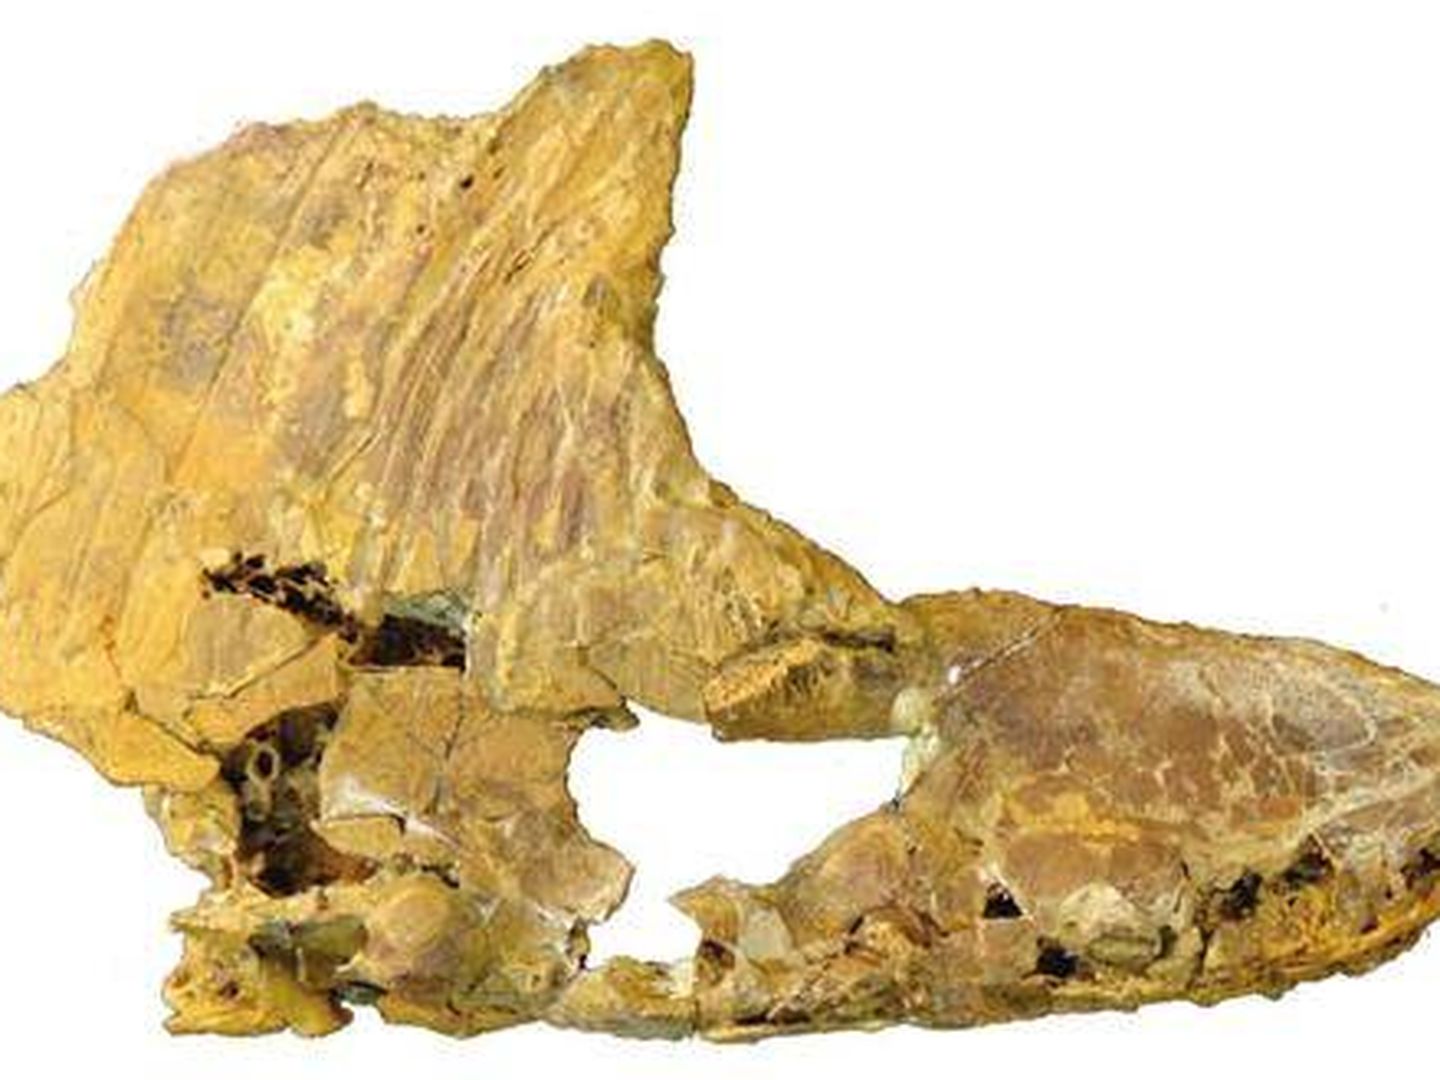 El resto del Iberodactylus Andreui encontrado en Teruel